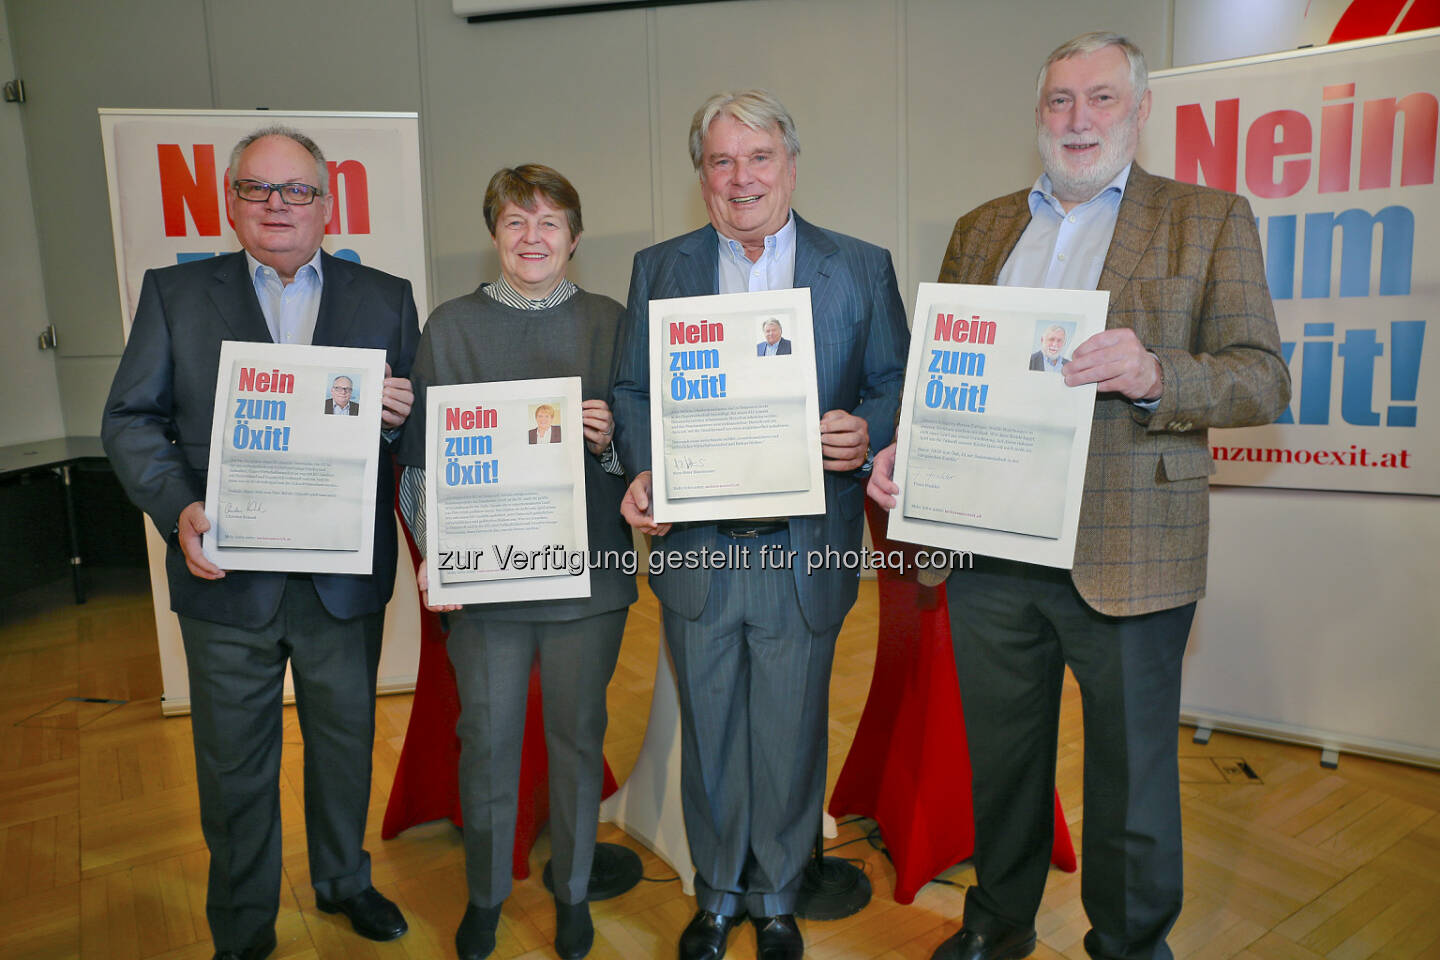 Christian Konrad, Brigitte Ederer, Hans Peter Haselsteiner, Franz Fischler - Kampagne „Nein zum Öxit“: Nein zum Öxit. Nein zu Hofer. (Fotograf: Günther Langegger)